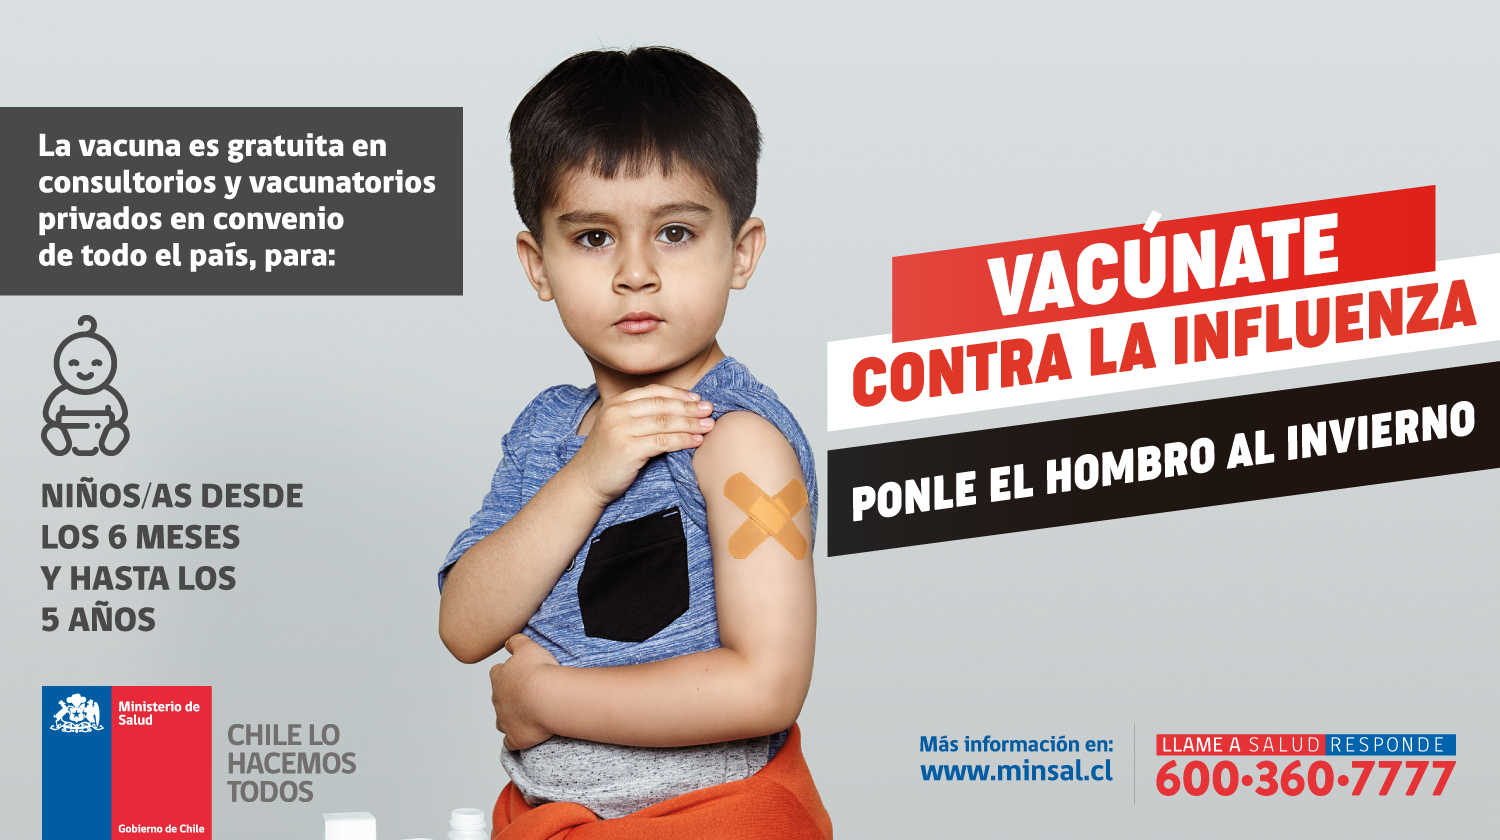 Campaña de vacunación contra la influenza Ponle el hombro al invierno